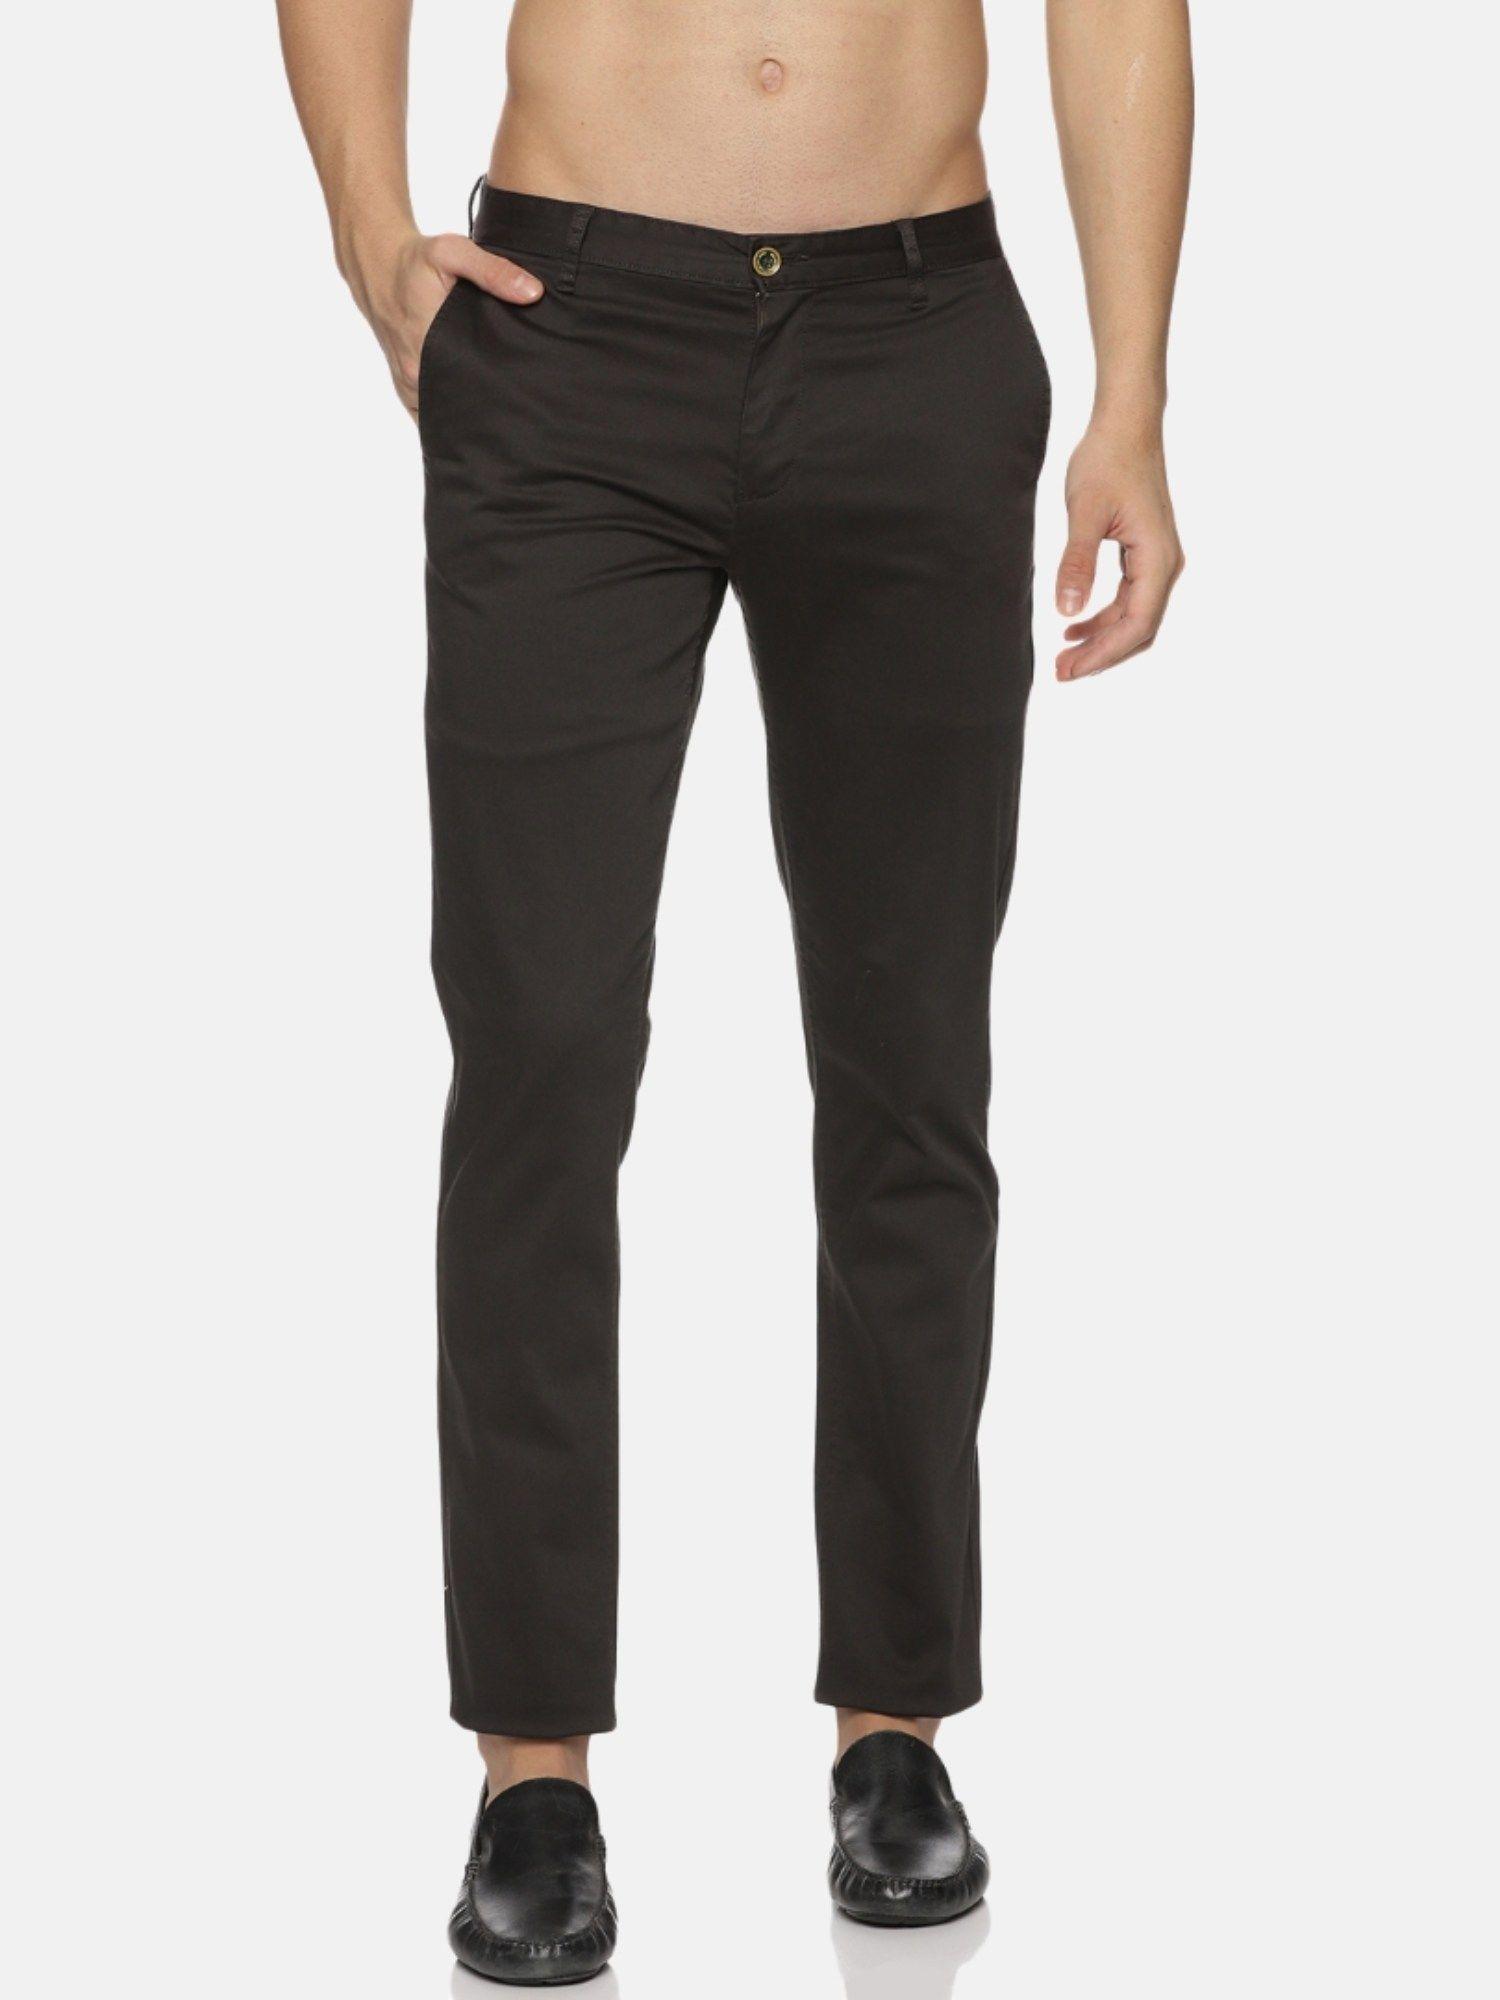 graphite trouser